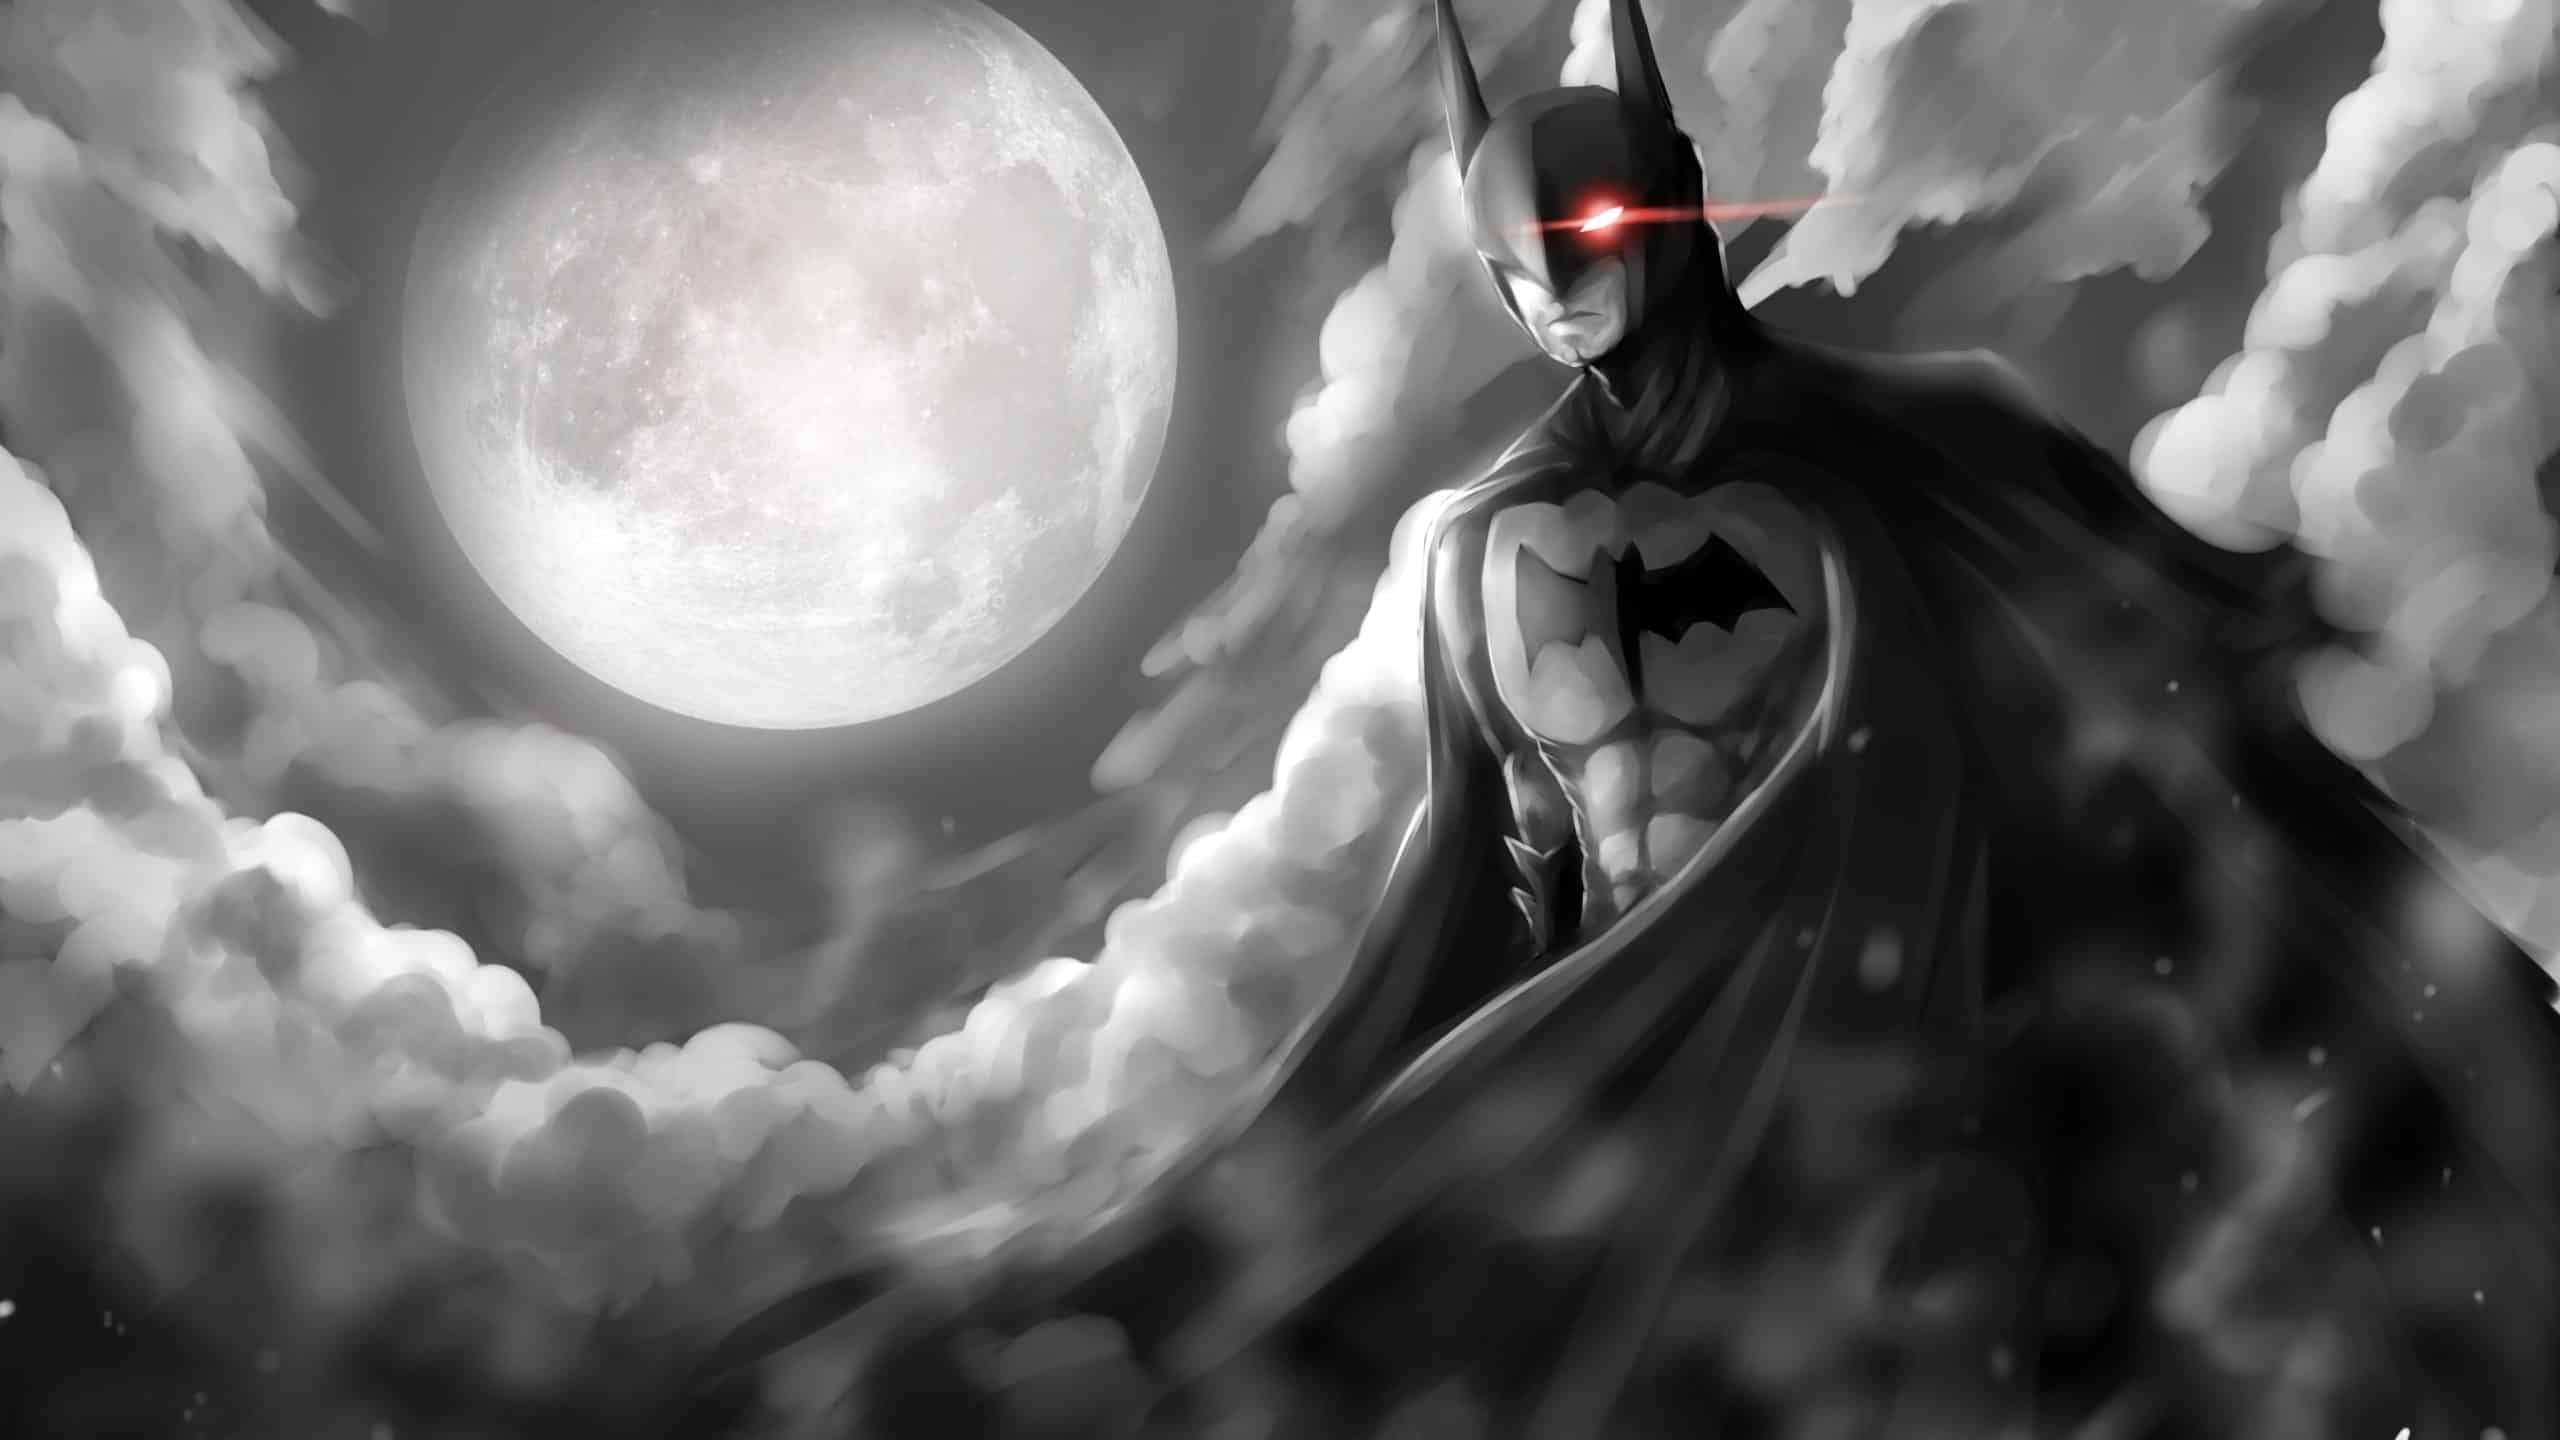 Chi Tiết 73+ Về Hình Batman Đẹp Hay Nhất - Du Học Akina